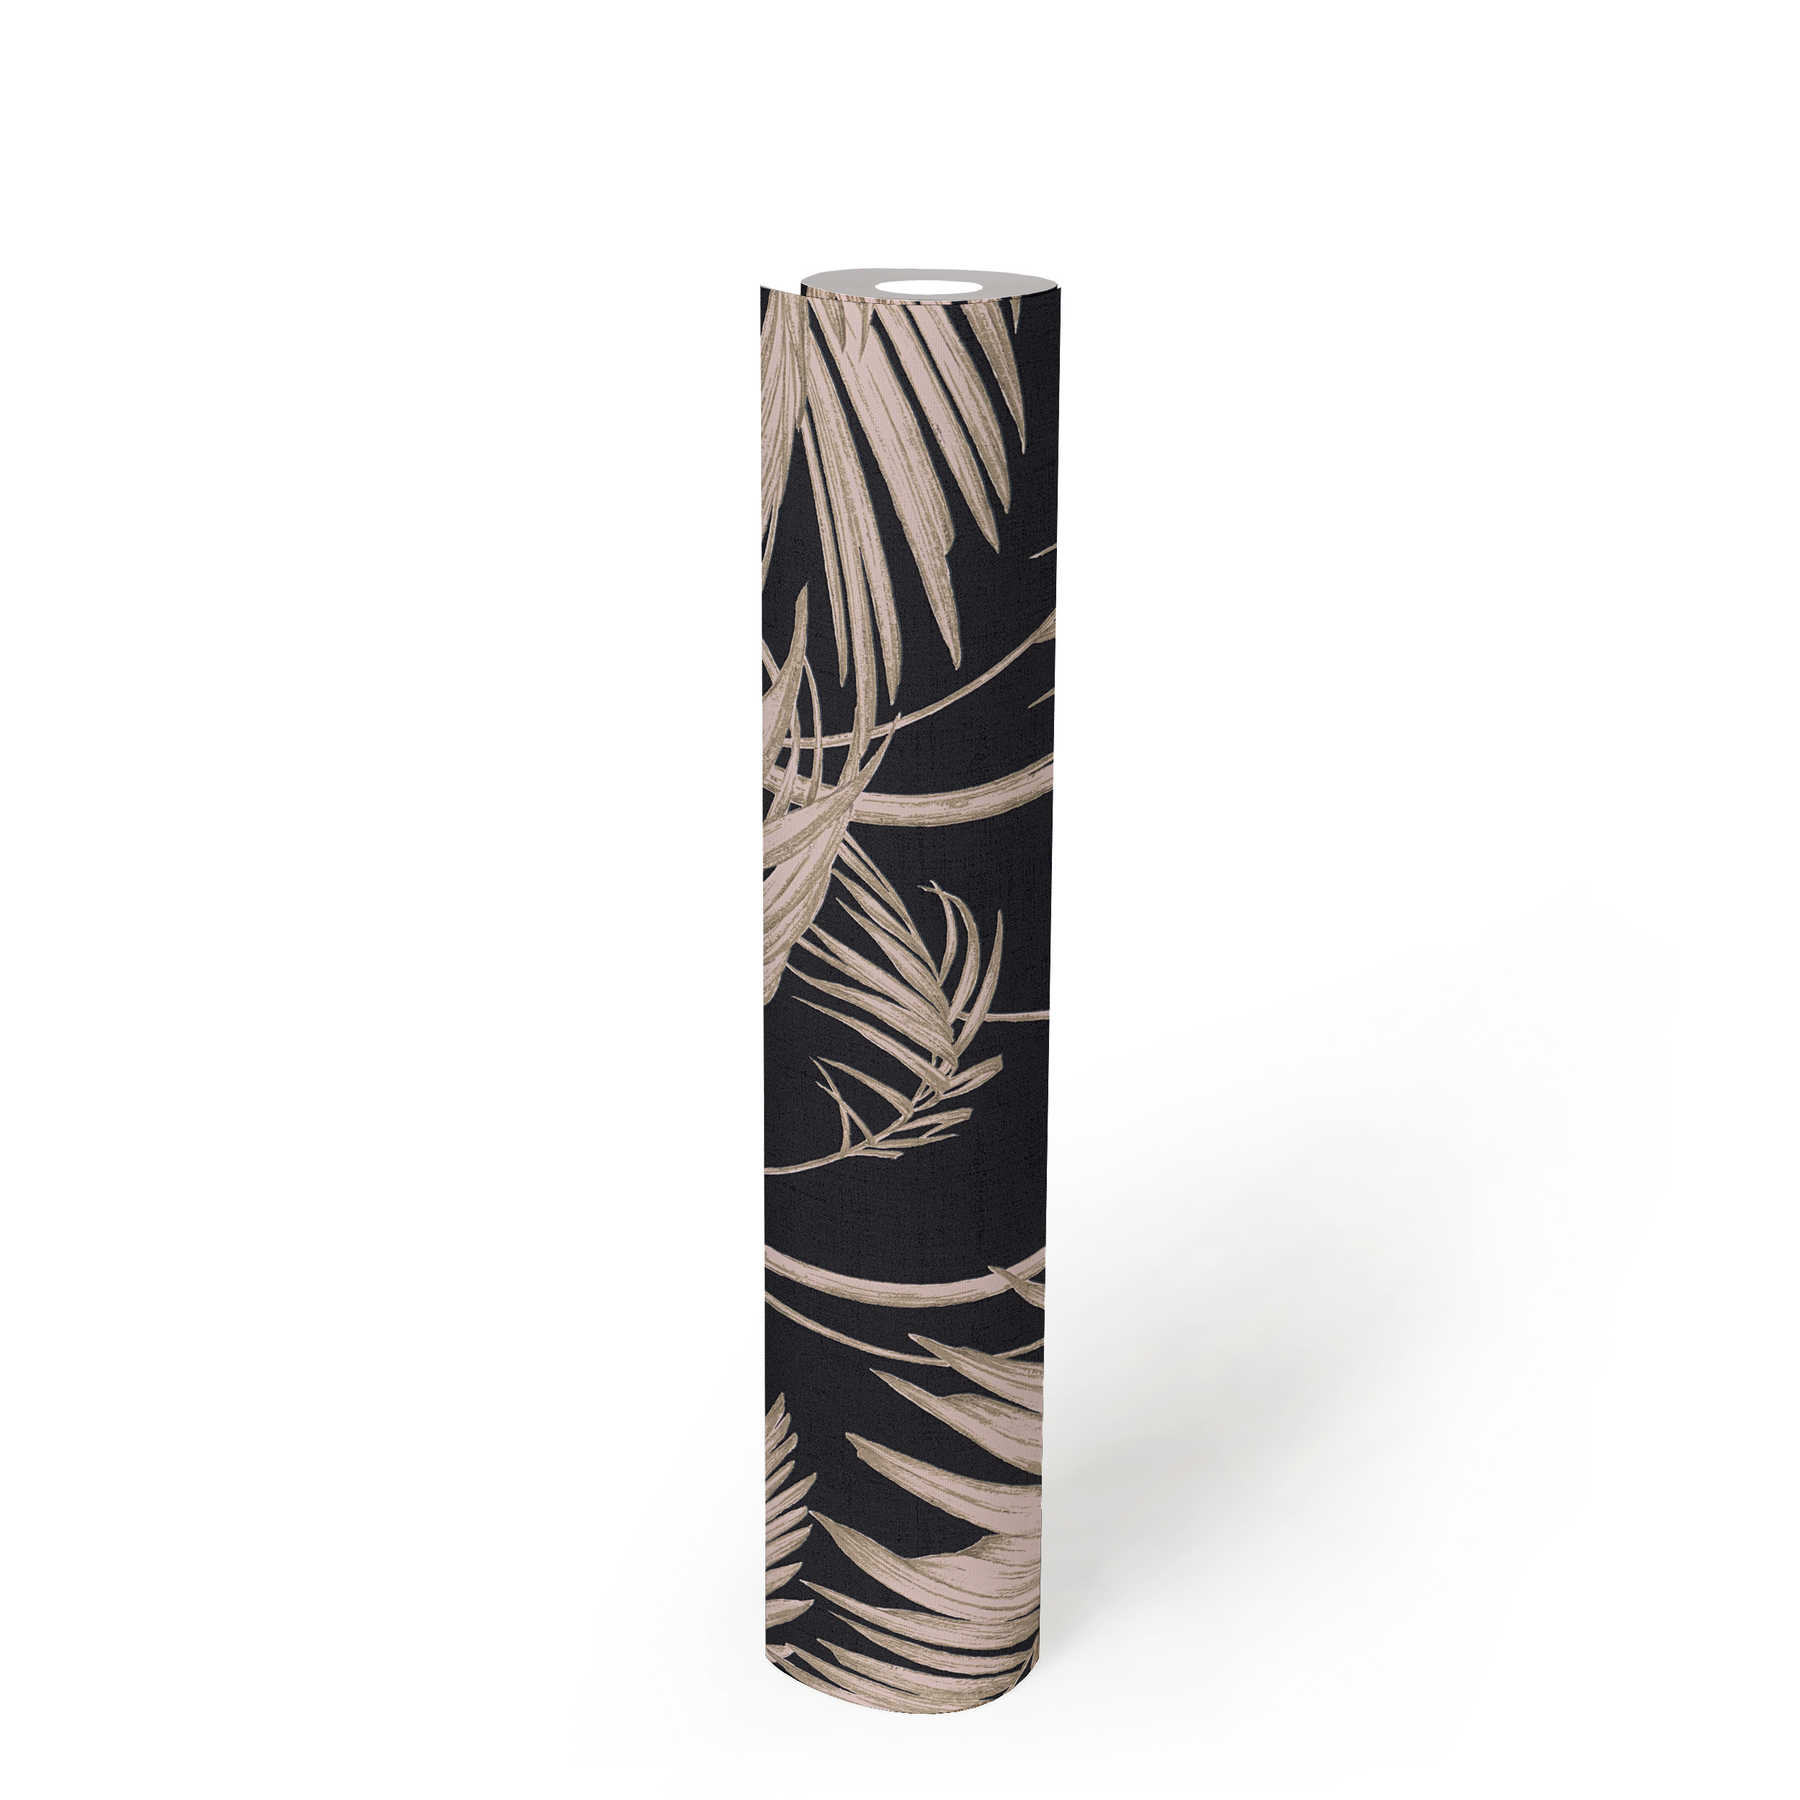             Natürliche Tapete Palmenblätter, Bambus – Rosa, Bronze, Schwarz
        